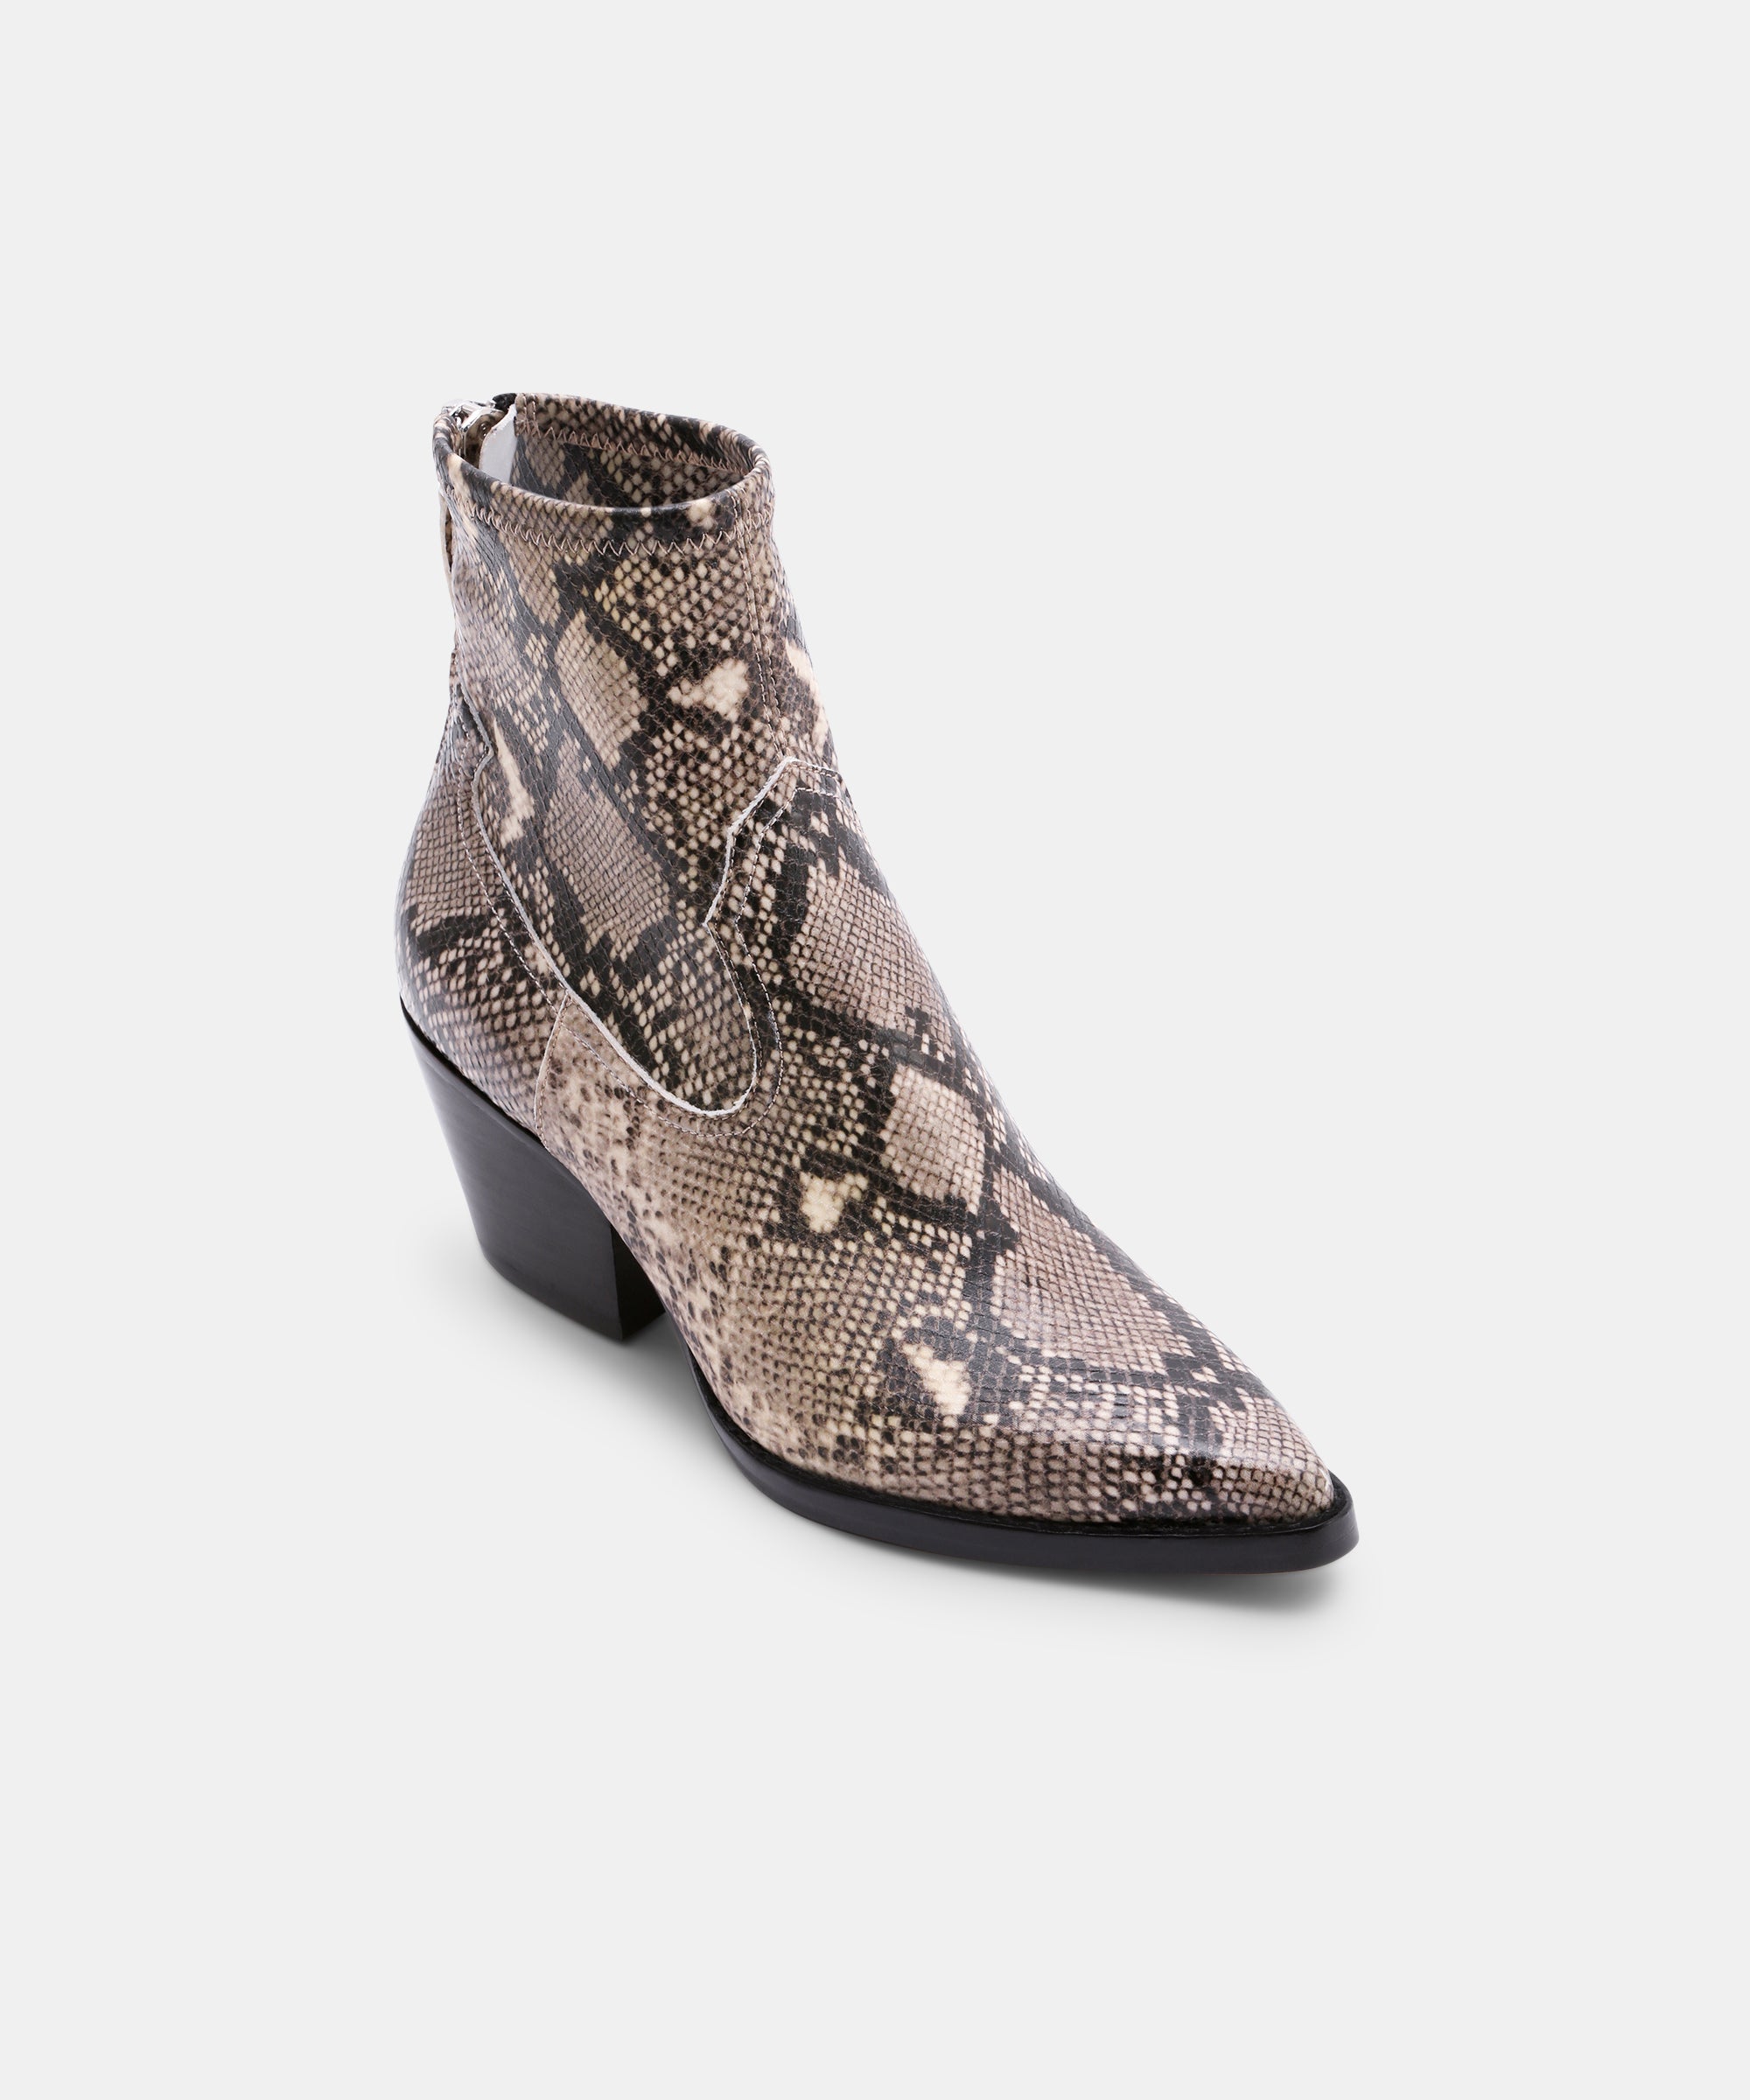 dolce vita snake boots